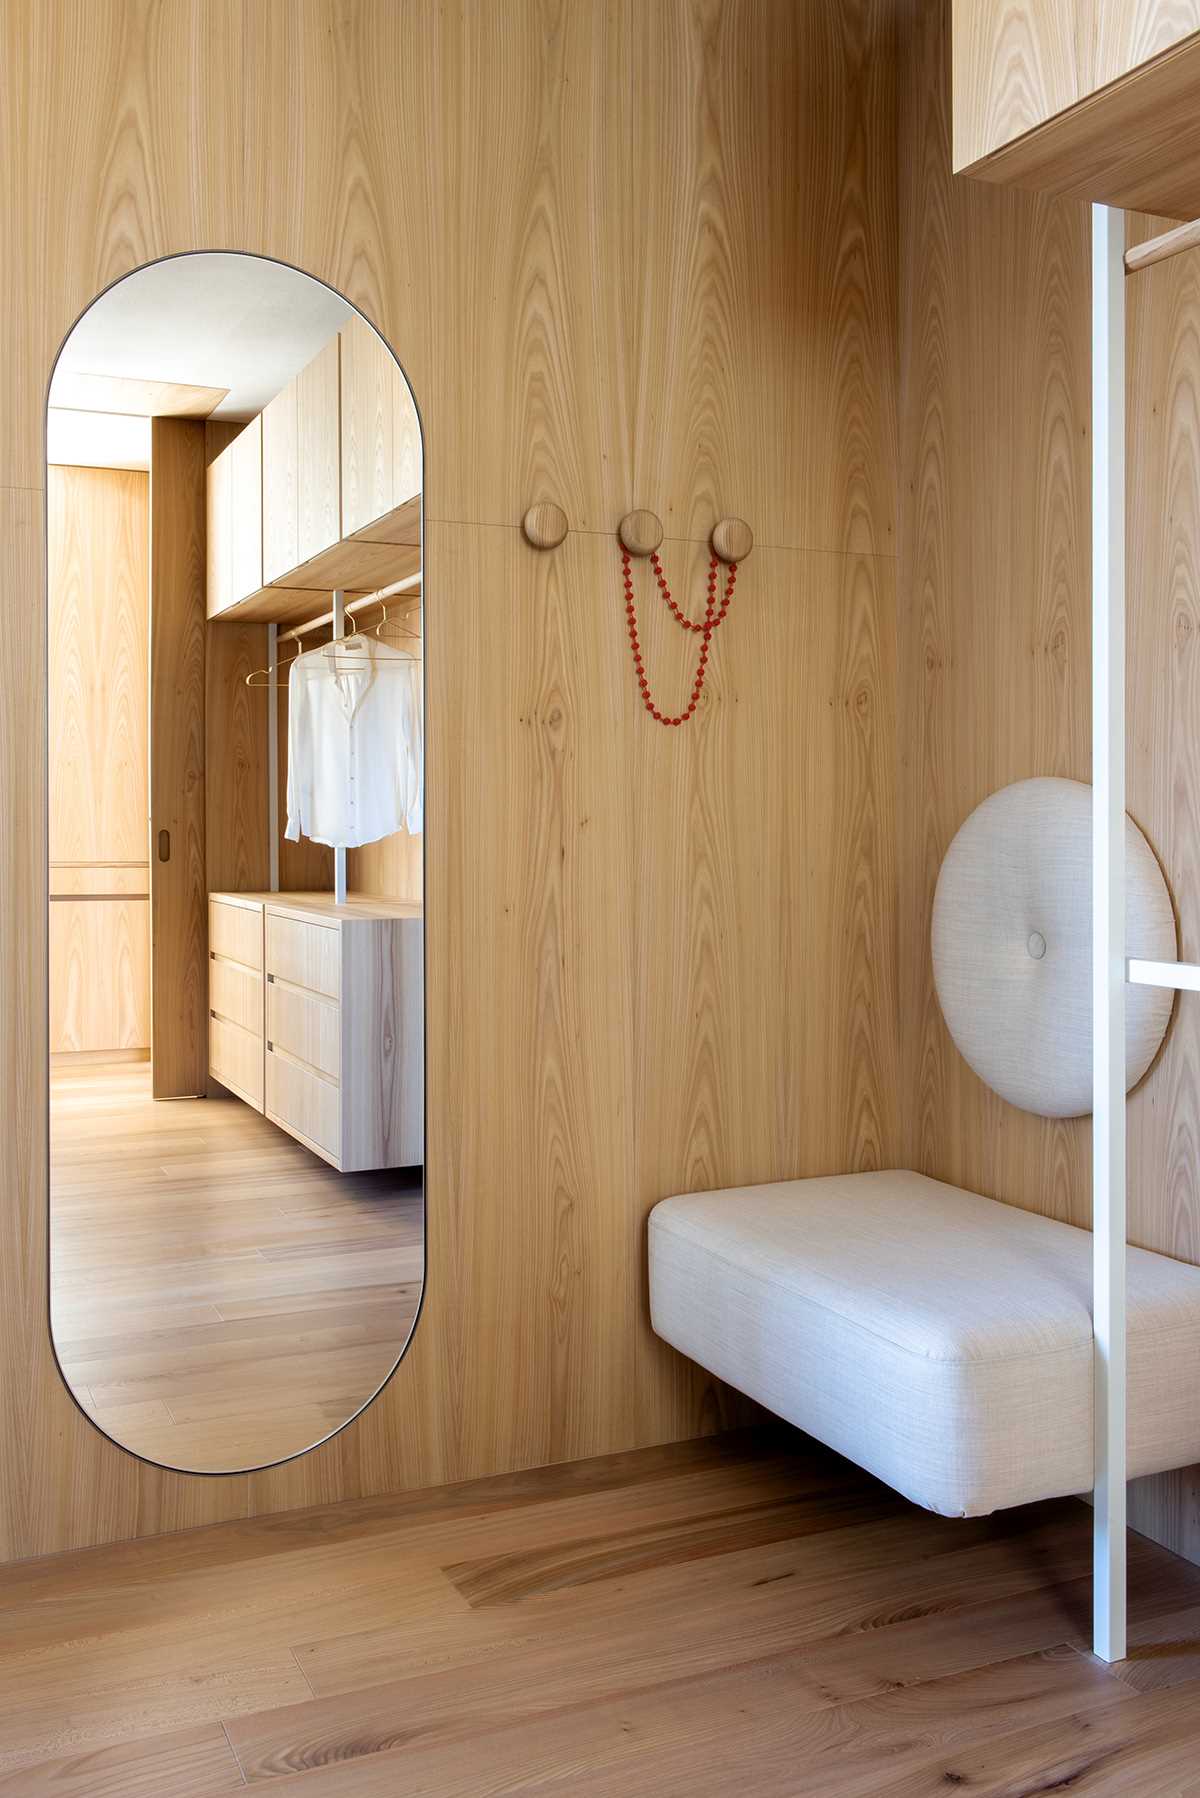 کمد دیواری با روکش چوبی دارای آینه ای قرصی شکل است که مکمل دیگر لهجه های قوسی موجود در اطراف خانه است.